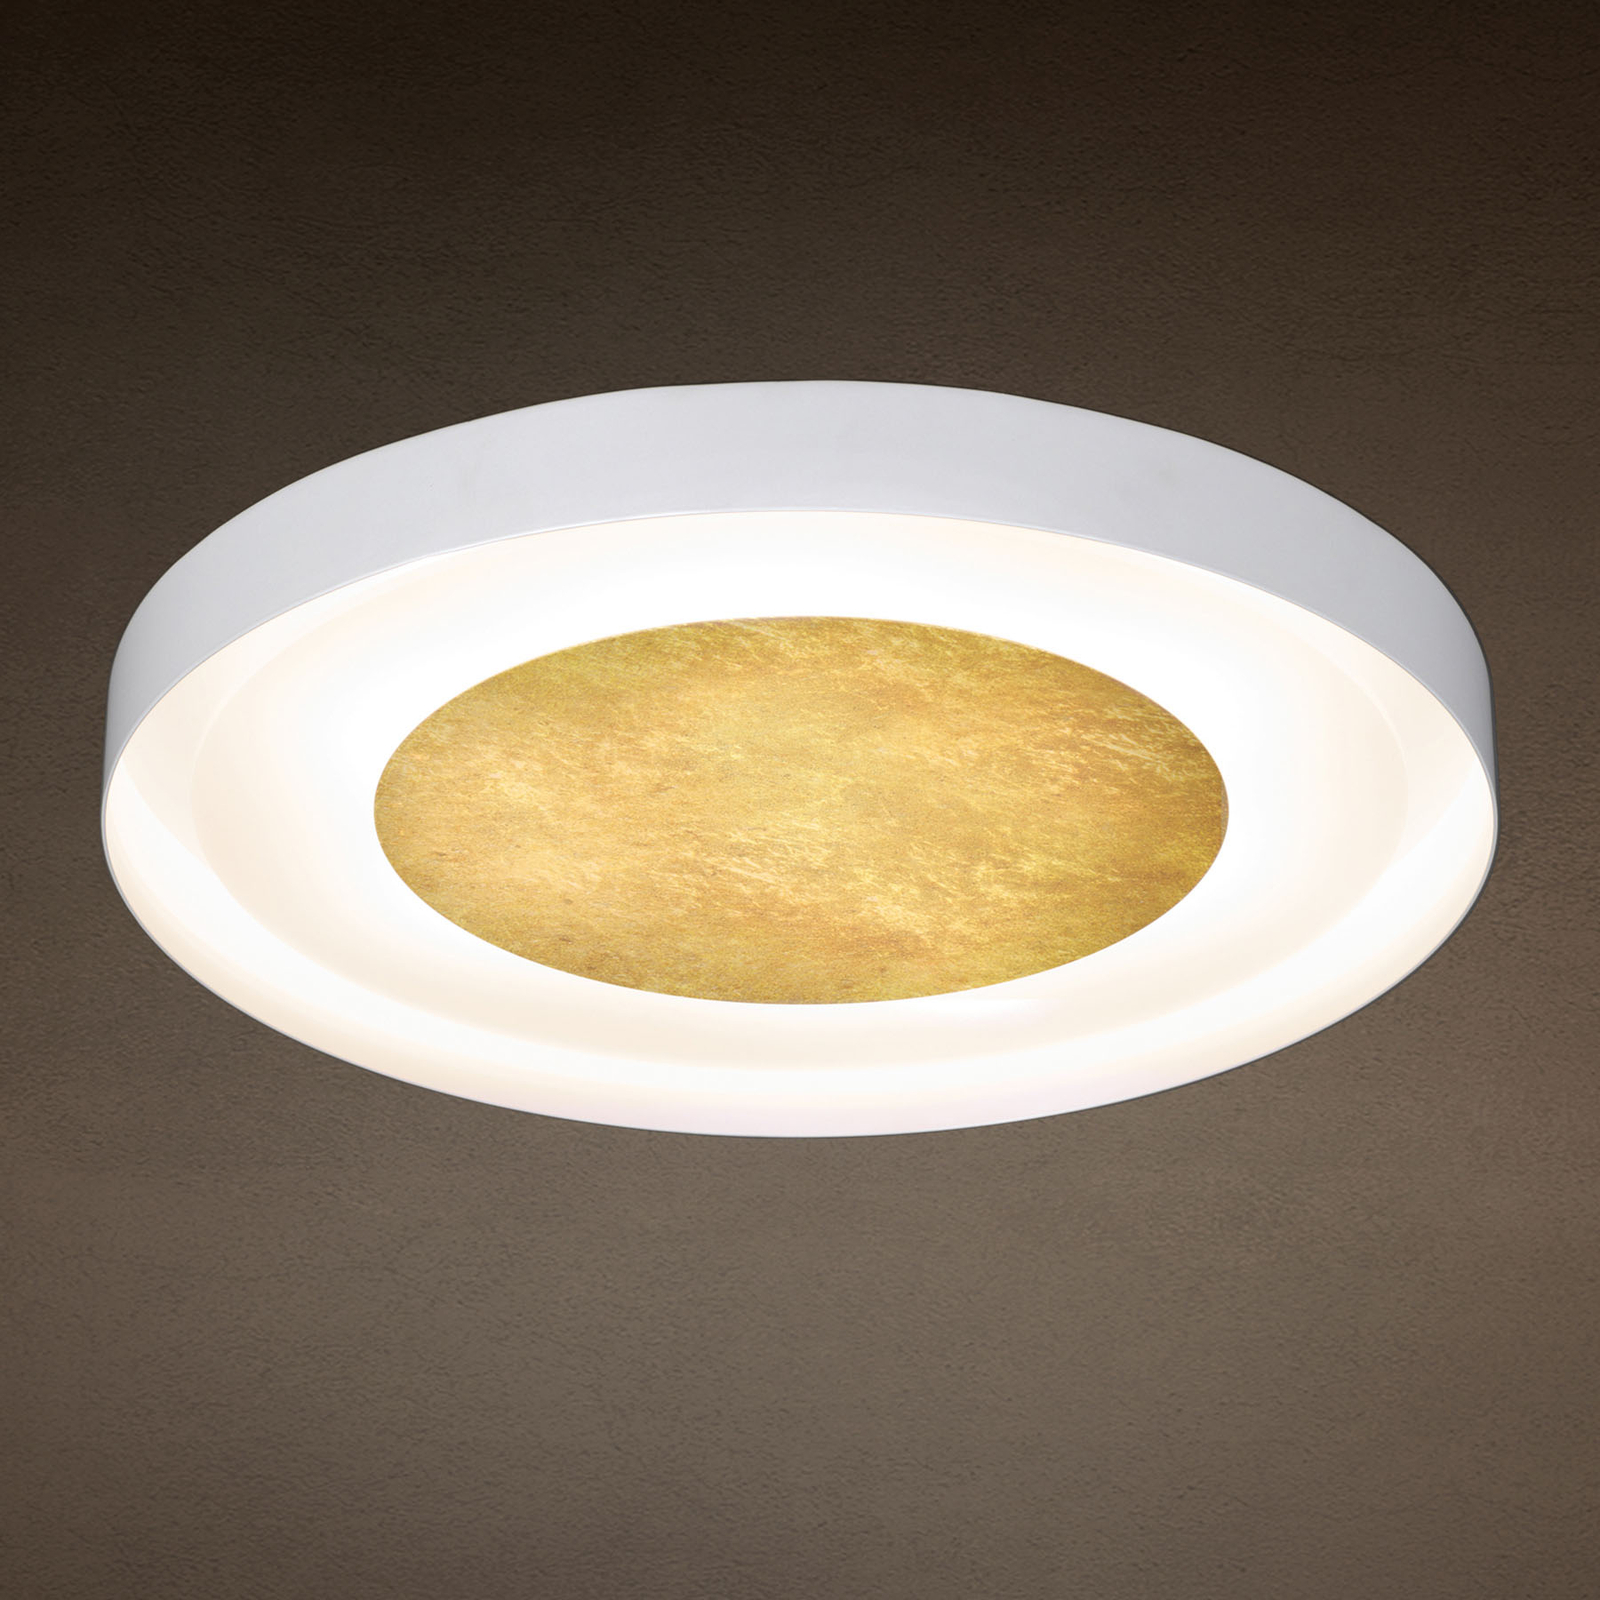 3560/6PL ceiling light, gold leaf, Ø 51 cm